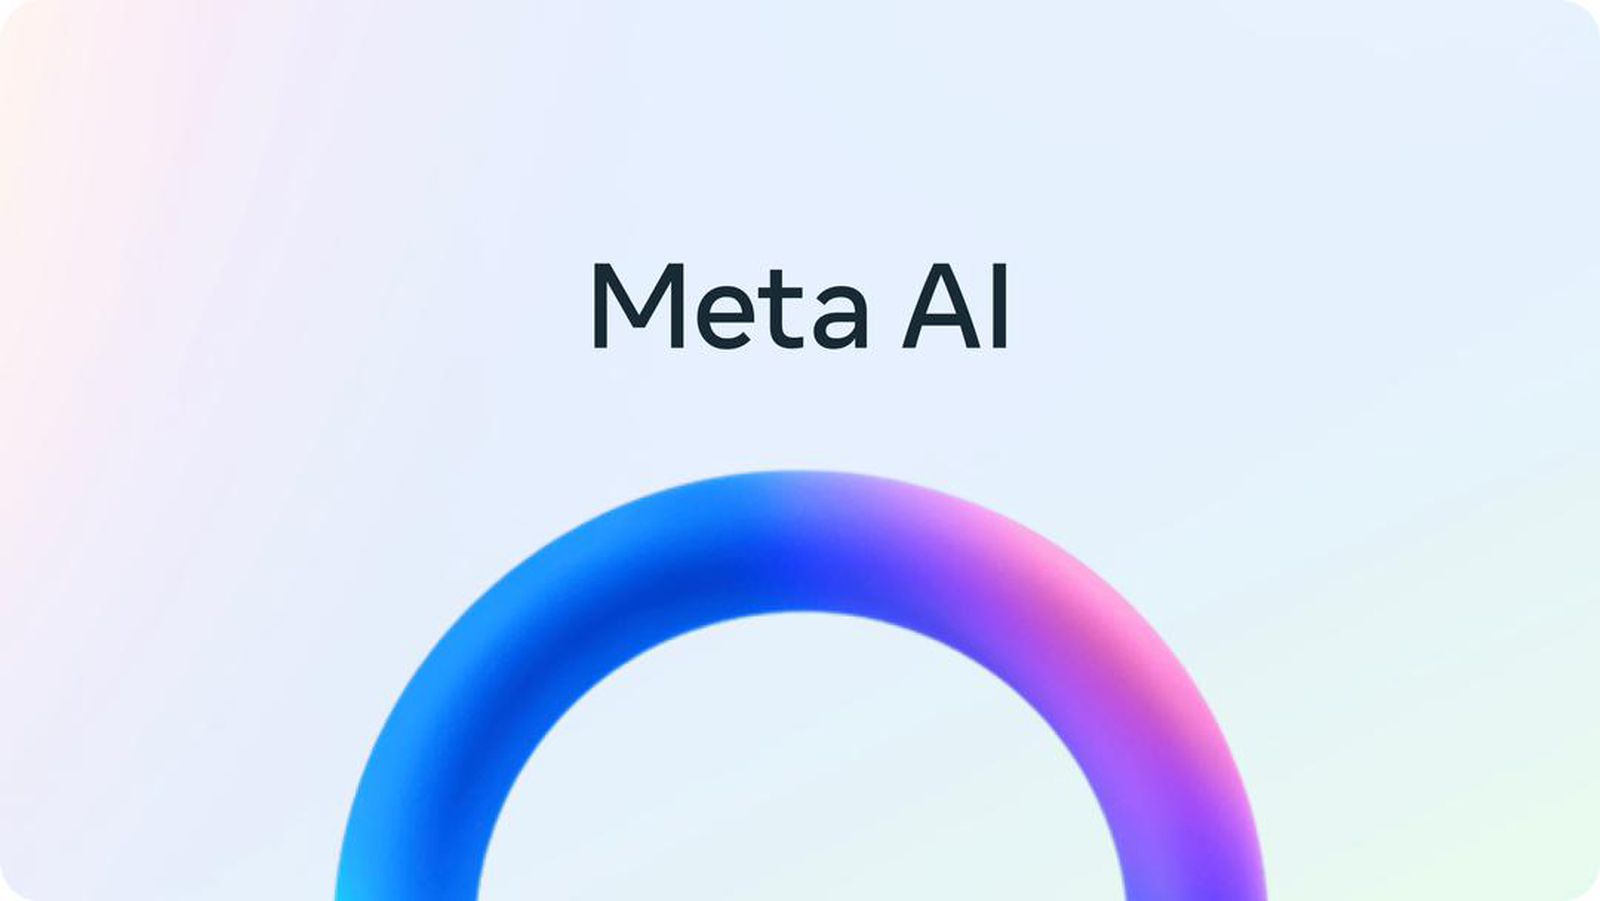 Apple y Meta Reportadamente Discutieron una Asociación de IA para iOS 18 – Titulo SEO en Español

Posible traducción: Apple y Meta Reportadamente Discutieron una Asociación de IA para iOS 18